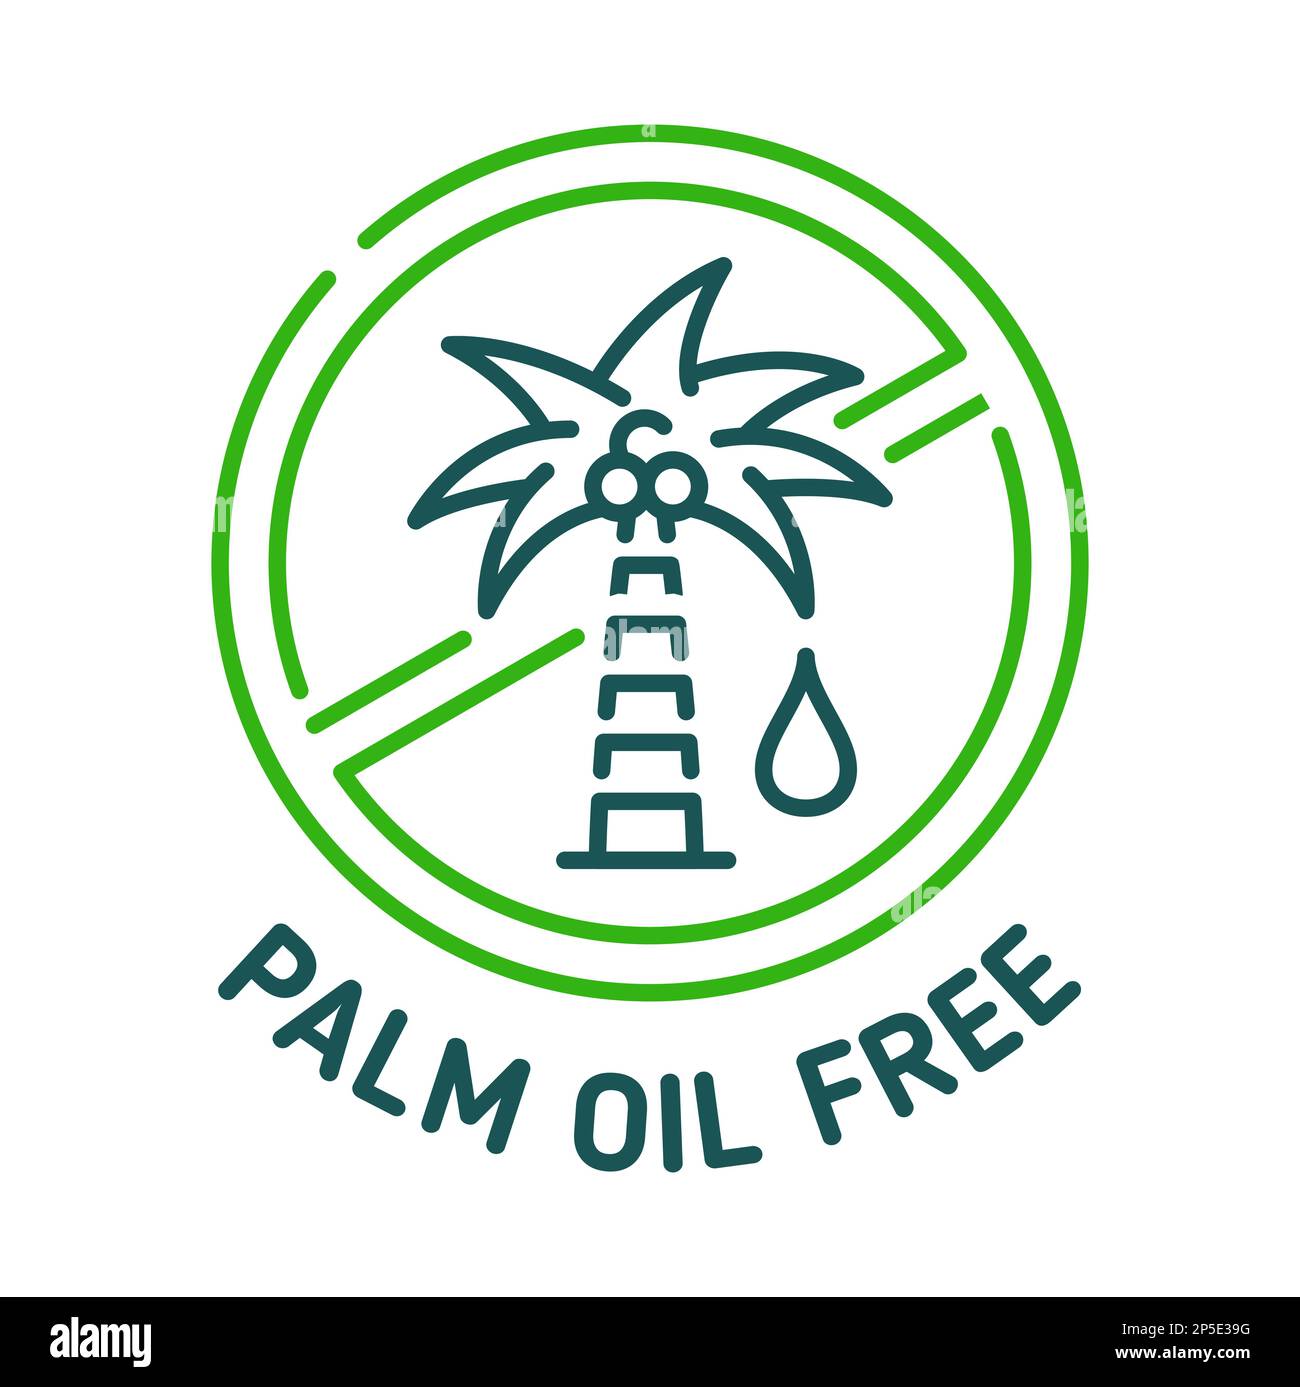 Symbol und Schild für Palmöl-freie Ausführung. Produktetikett für natürliche Ernährung oder ökologisch sichere Kosmetika, Aufkleber oder Abzeichen für gesunde und organische Lebensmittel. Palmöl enthalten Stock Vektor